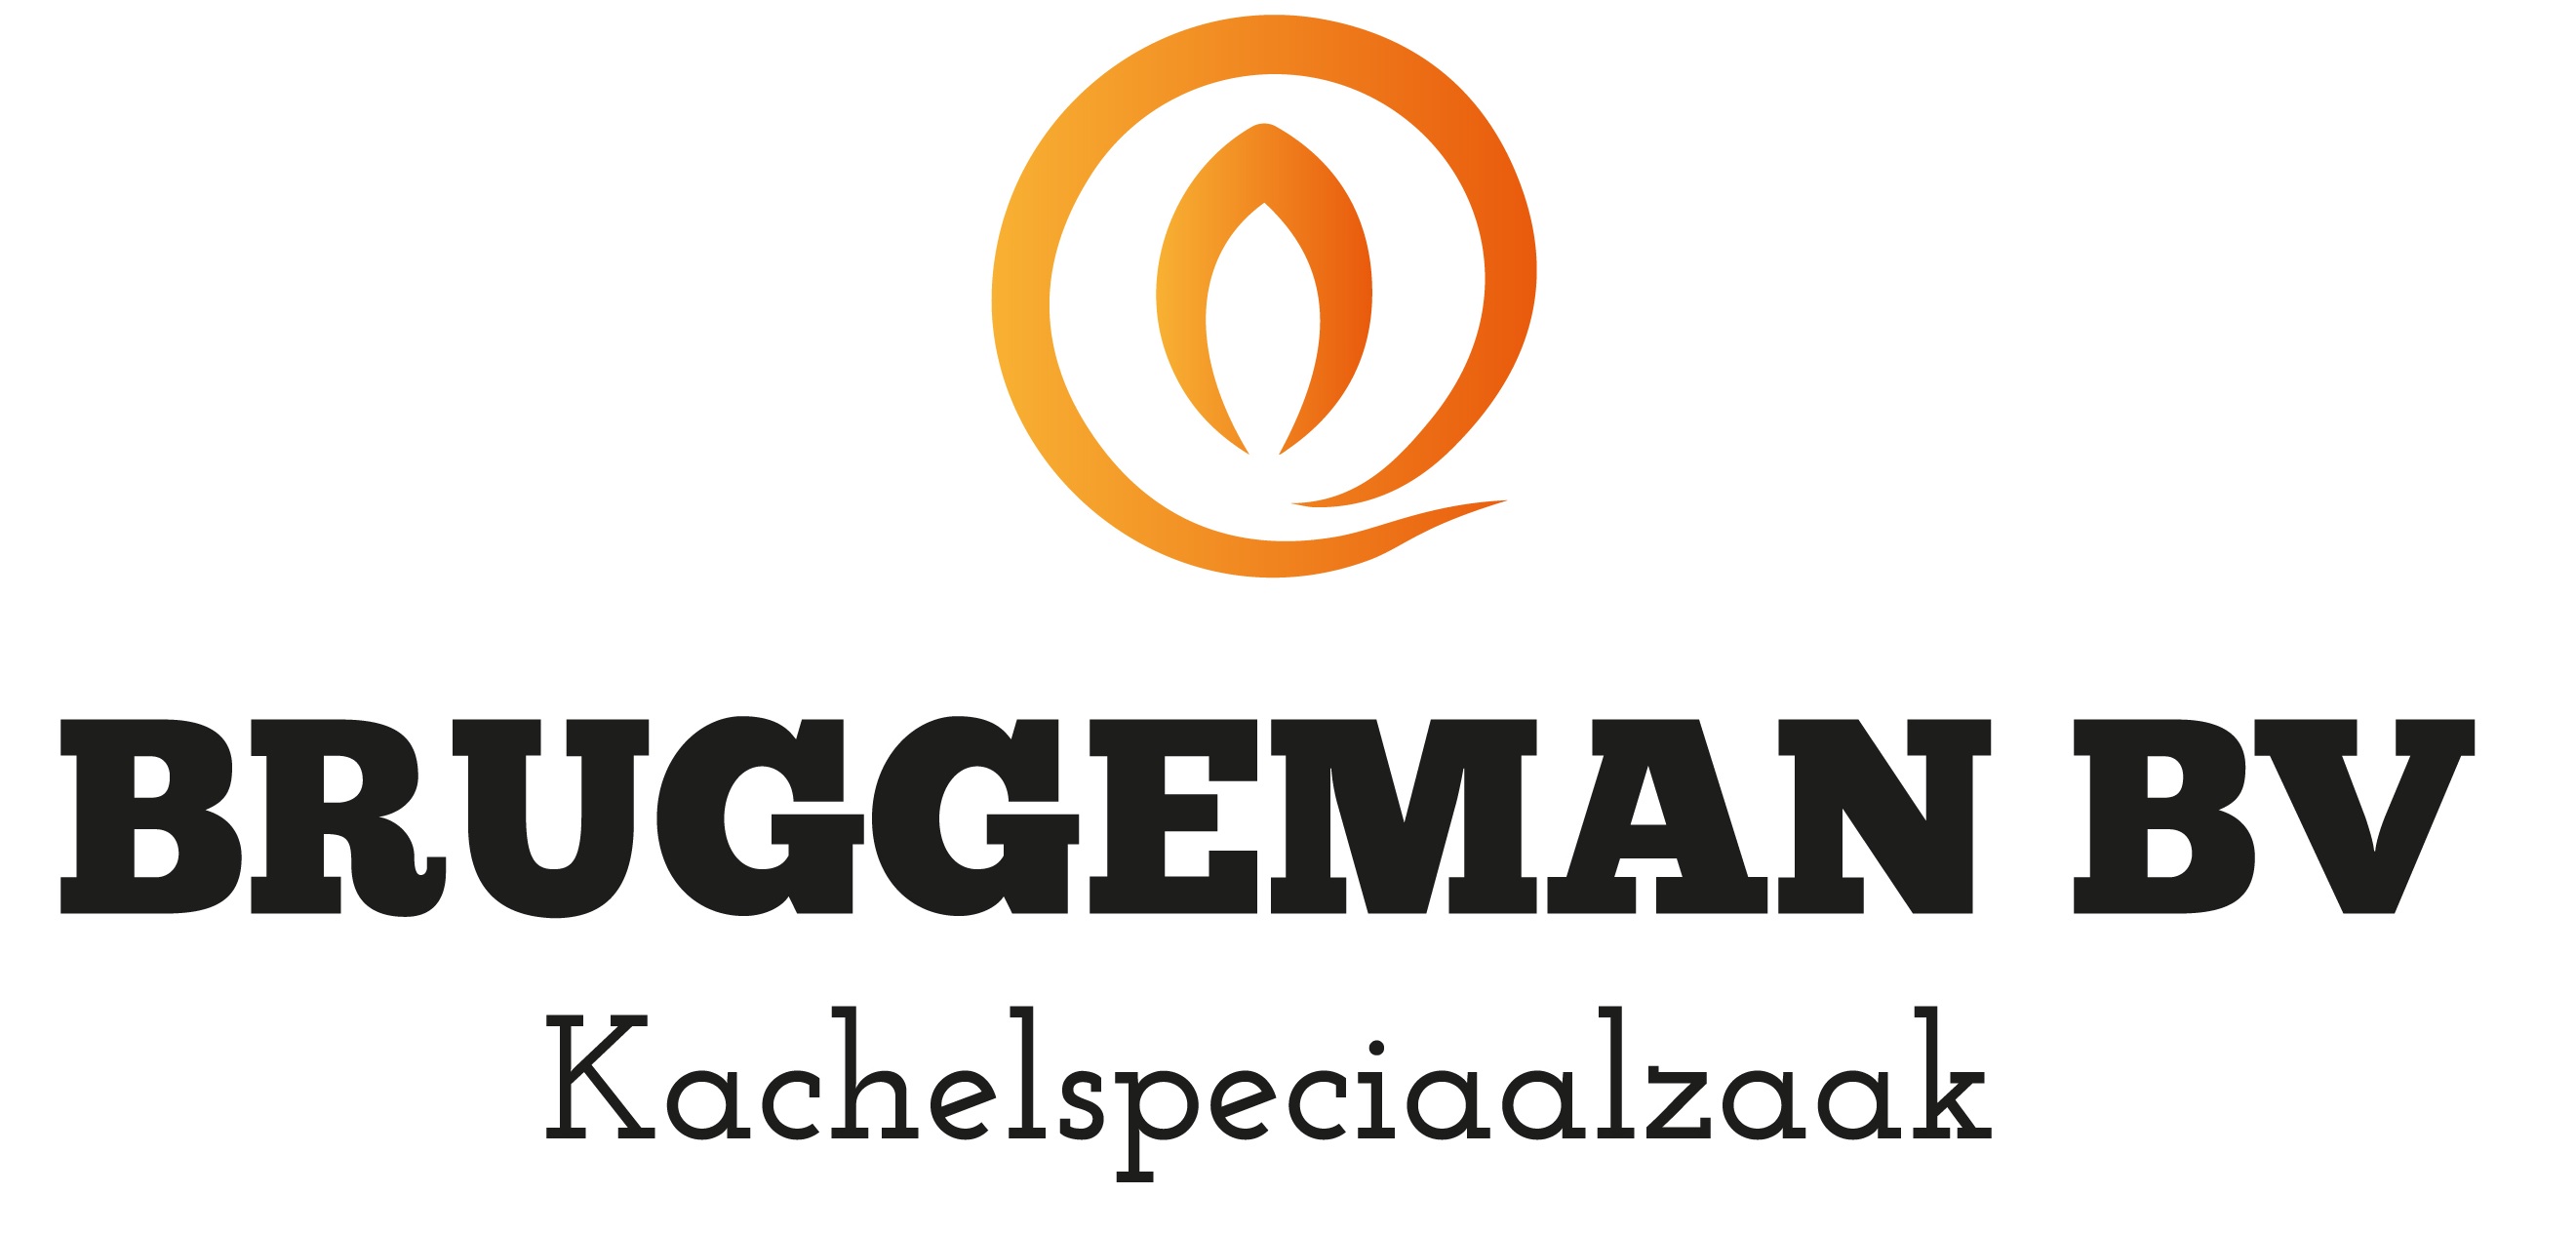 Bruggeman Kachelspeciaalzaak